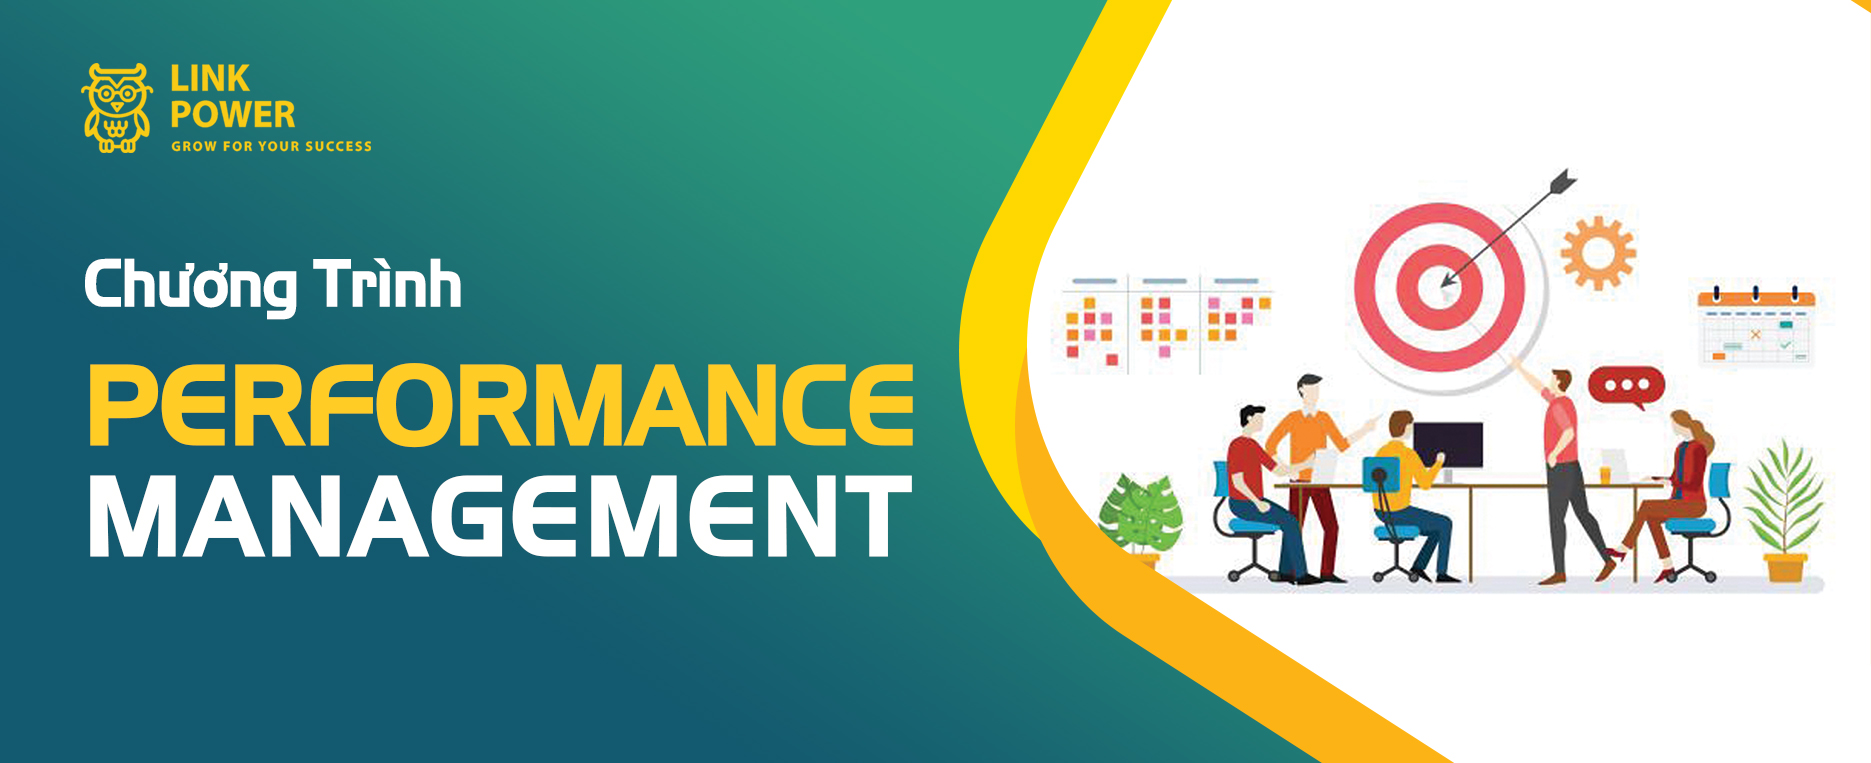 Chương Trình Performance Management - Hệ Thống Quản Lý Thành Tích